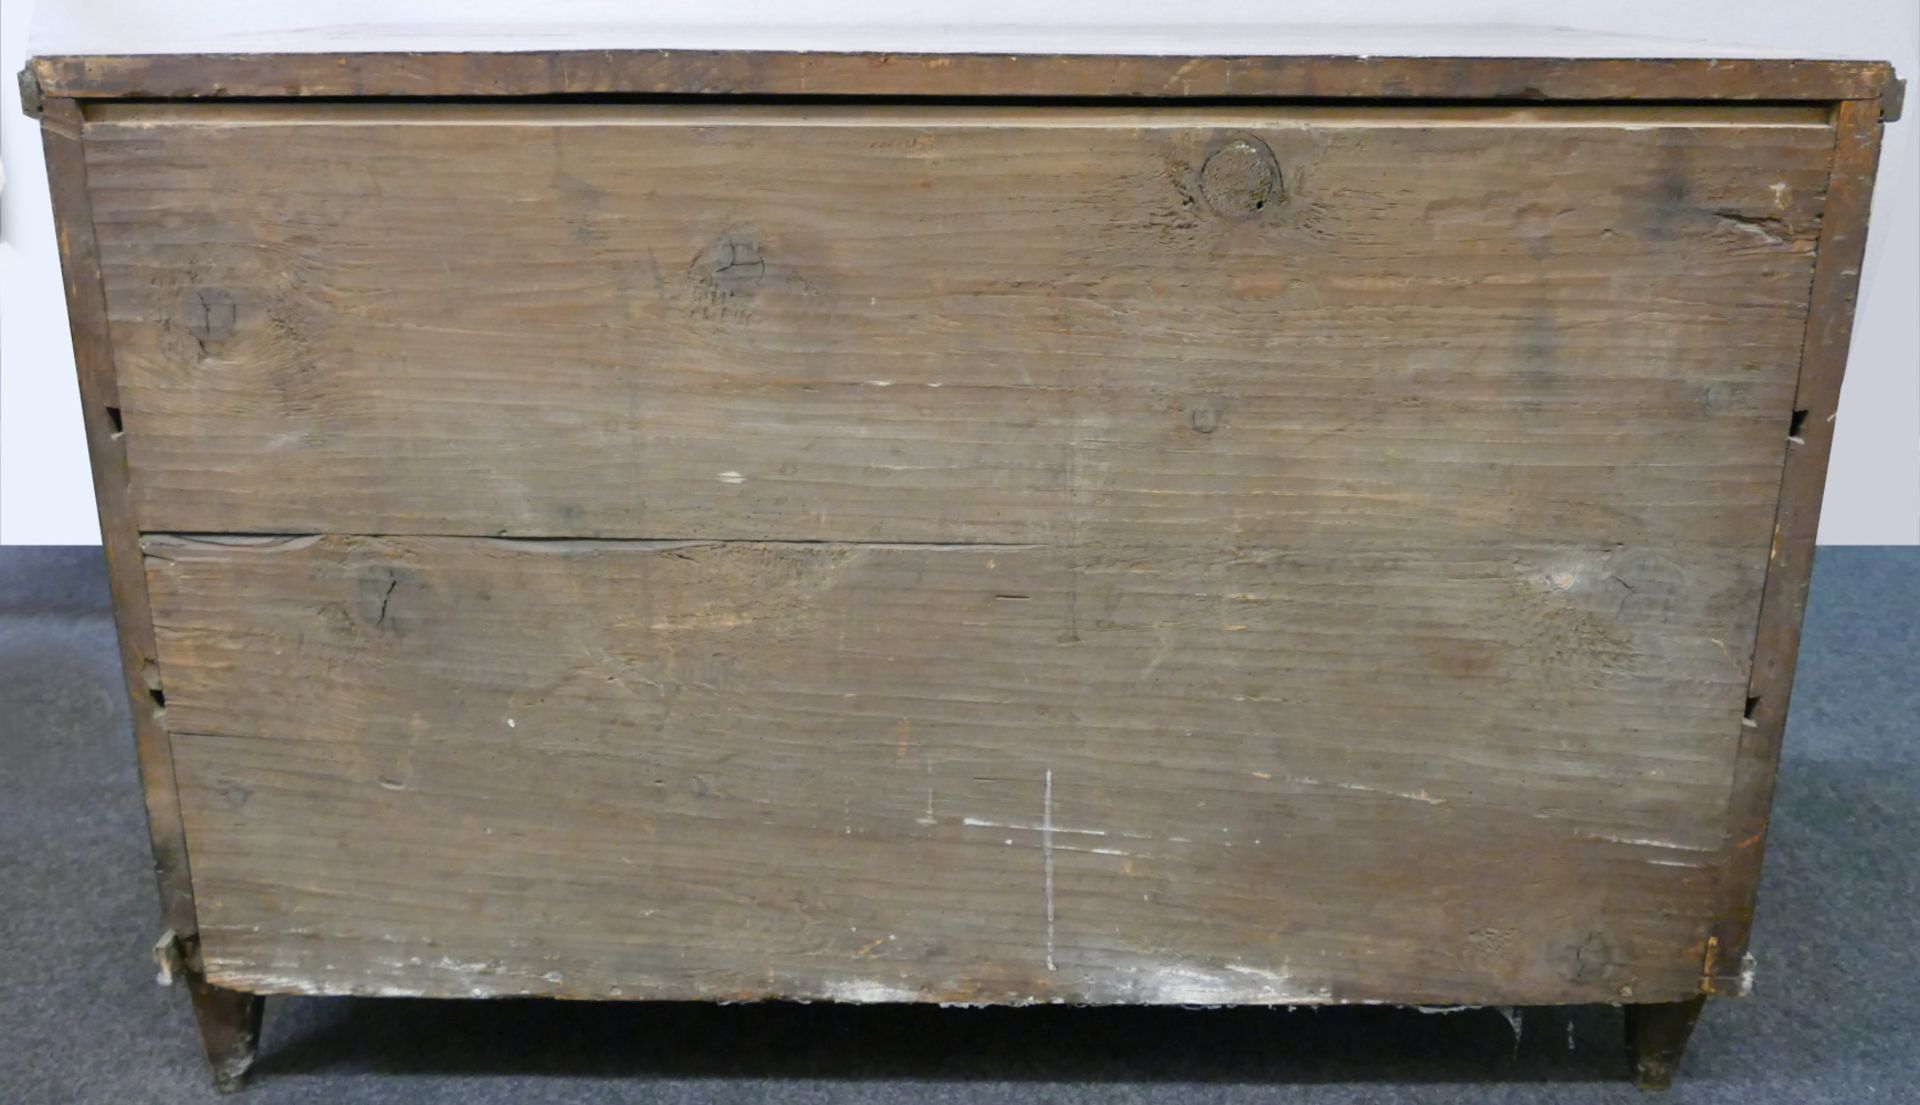 1 Kommode wohl um 1800 Holz Nussbaum furniert mit Bandintarsien u.a., Messingbeschläge/-schlüsselfel - Image 5 of 5